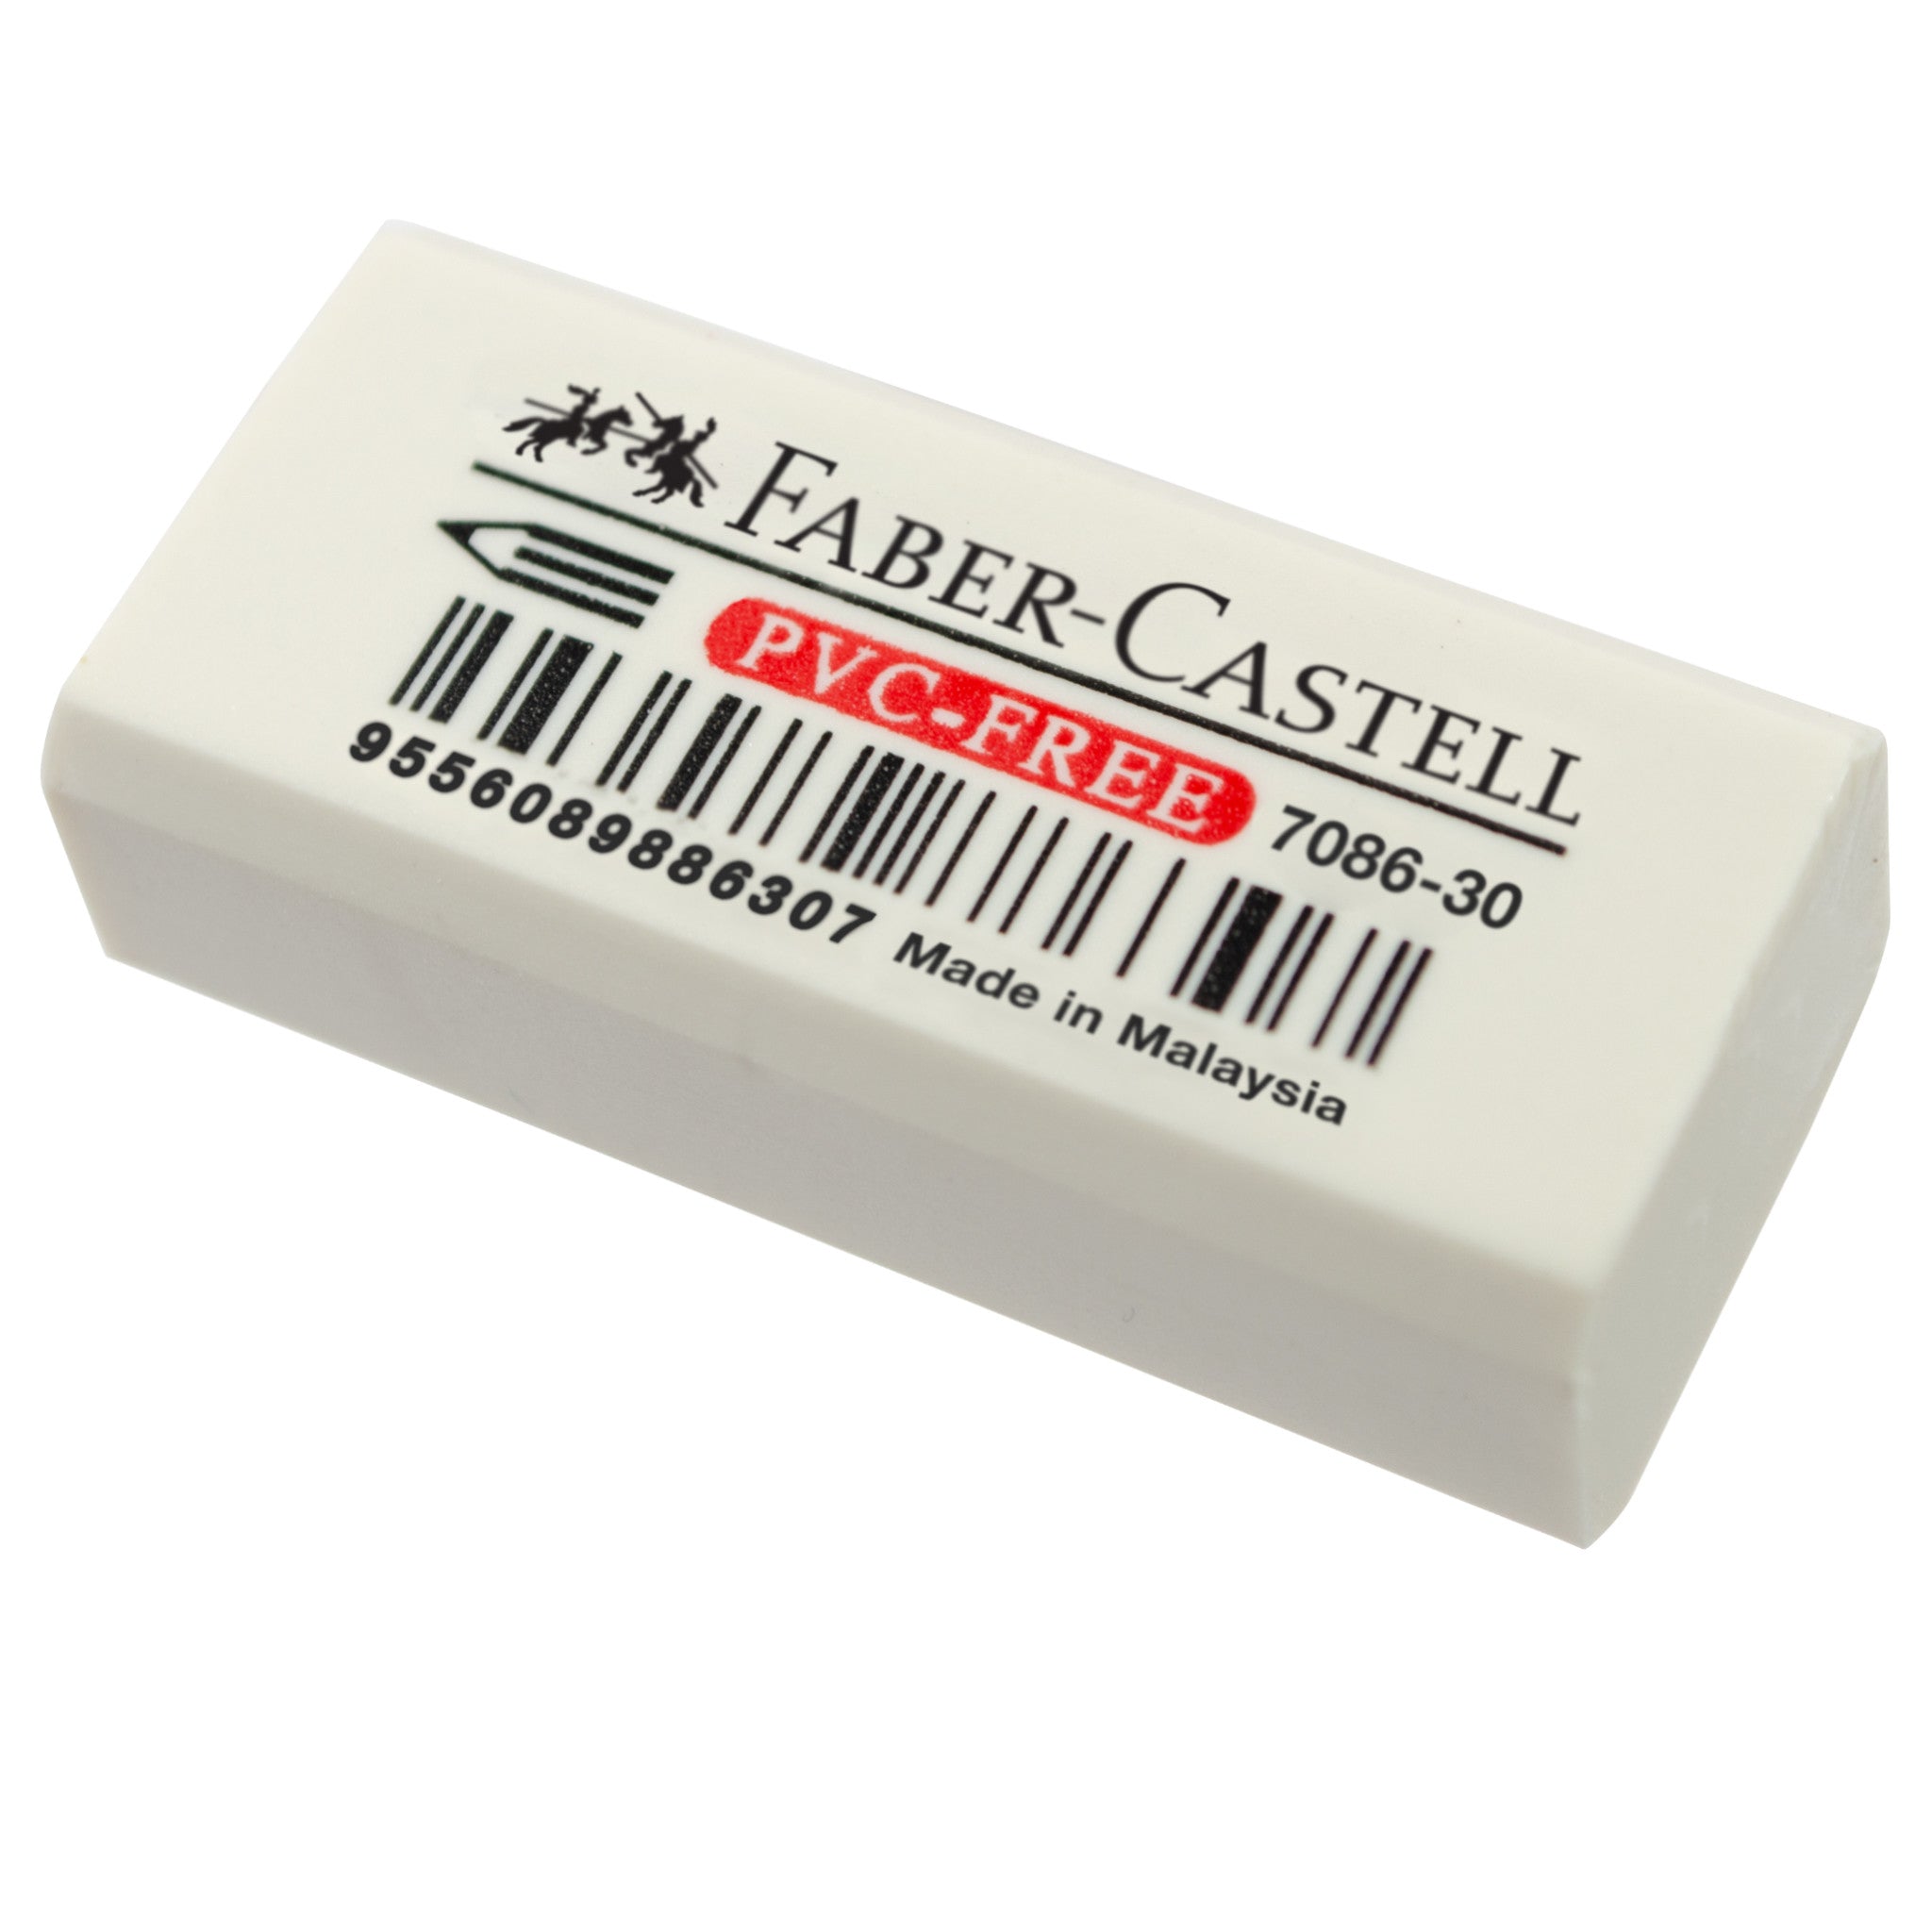 PVC-Free Eraser